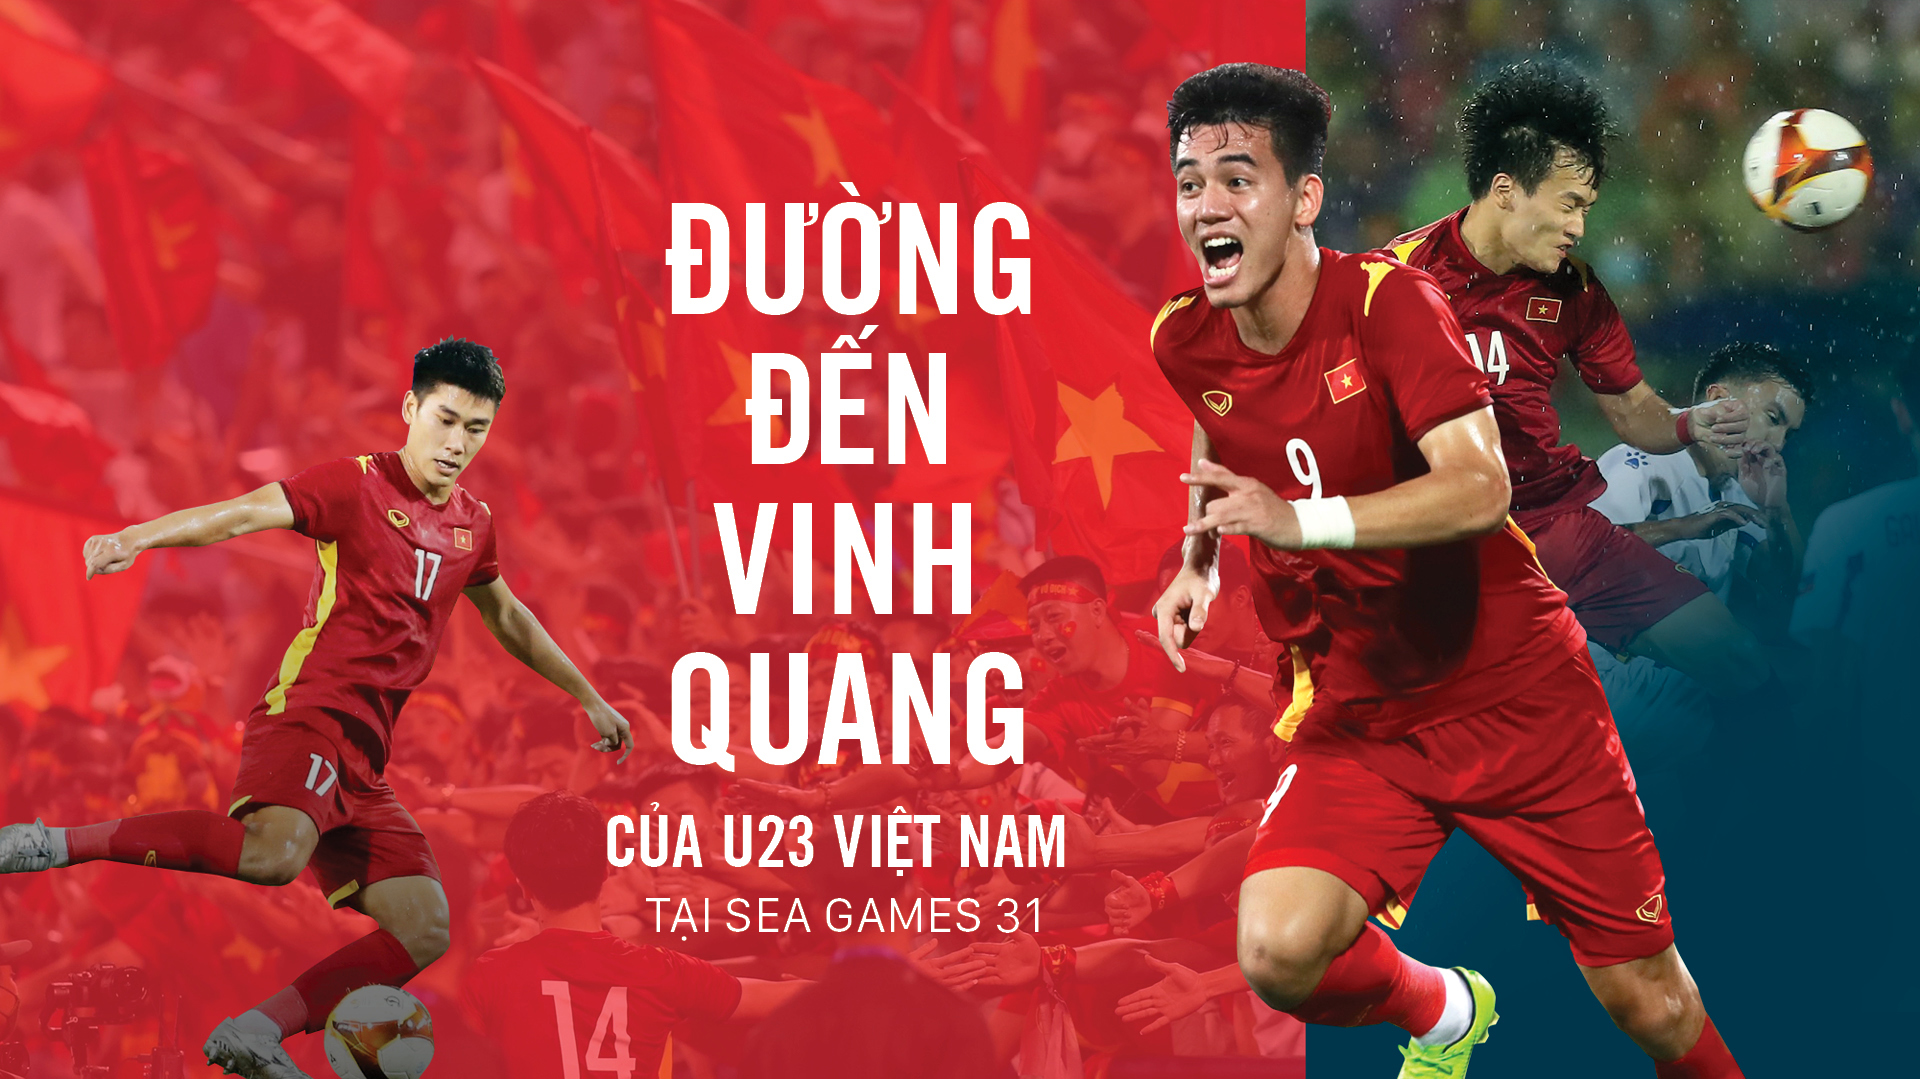 Đường đến vinh quang của U23 Việt Nam tại SEA Games 31